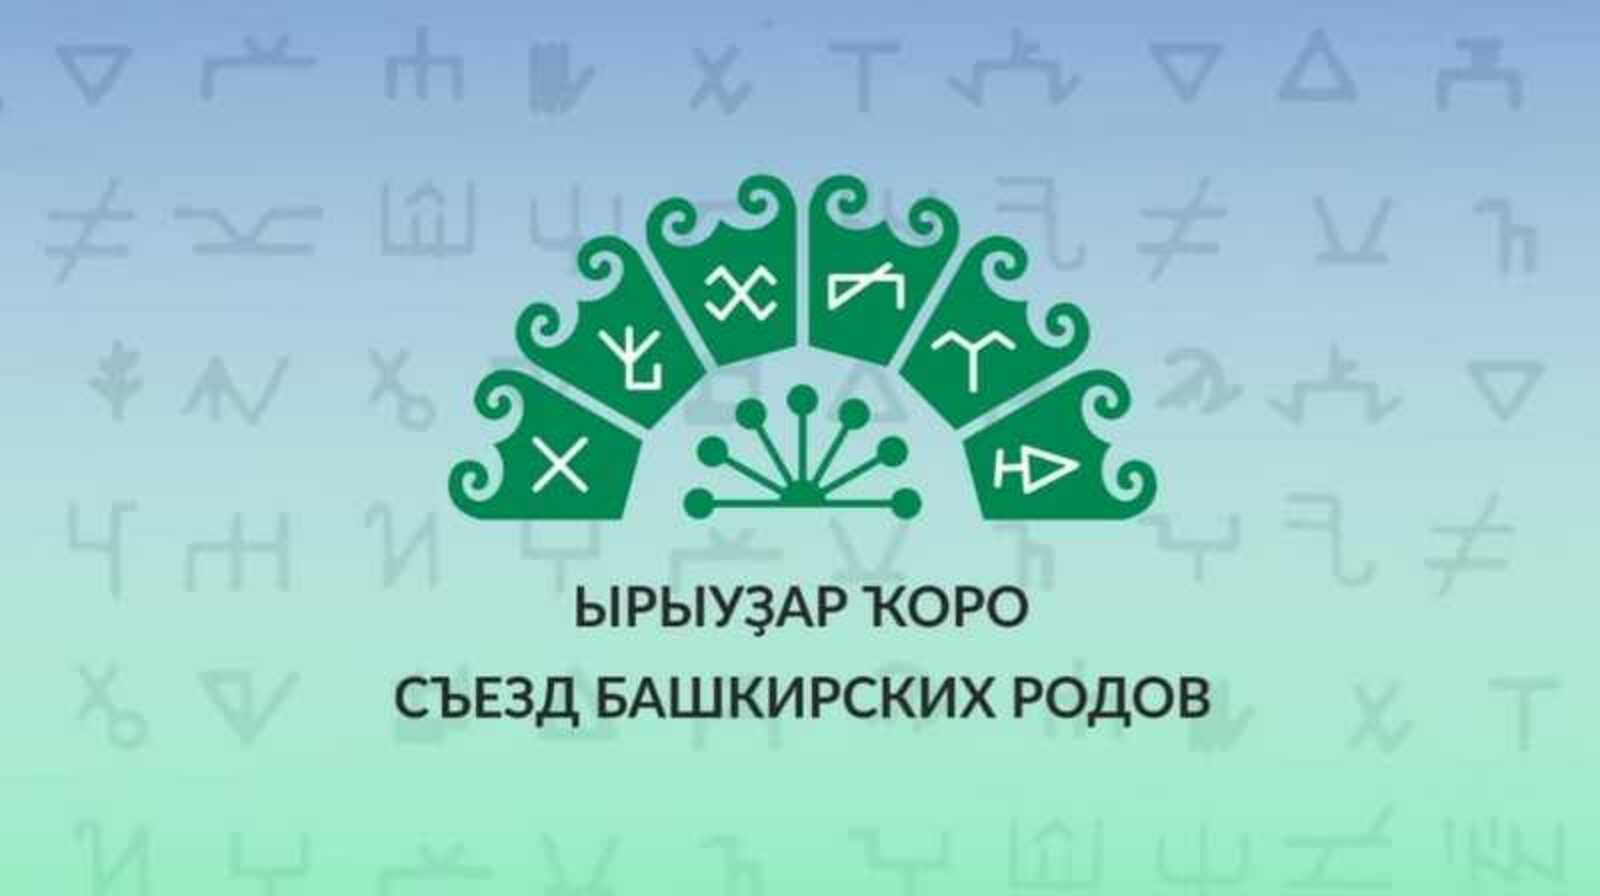 Сегодня, 15 октября, в г. Туймазы состоится Съезд башкирских родов (Ырыуҙар ҡоро) в рамках Года башкирской истории